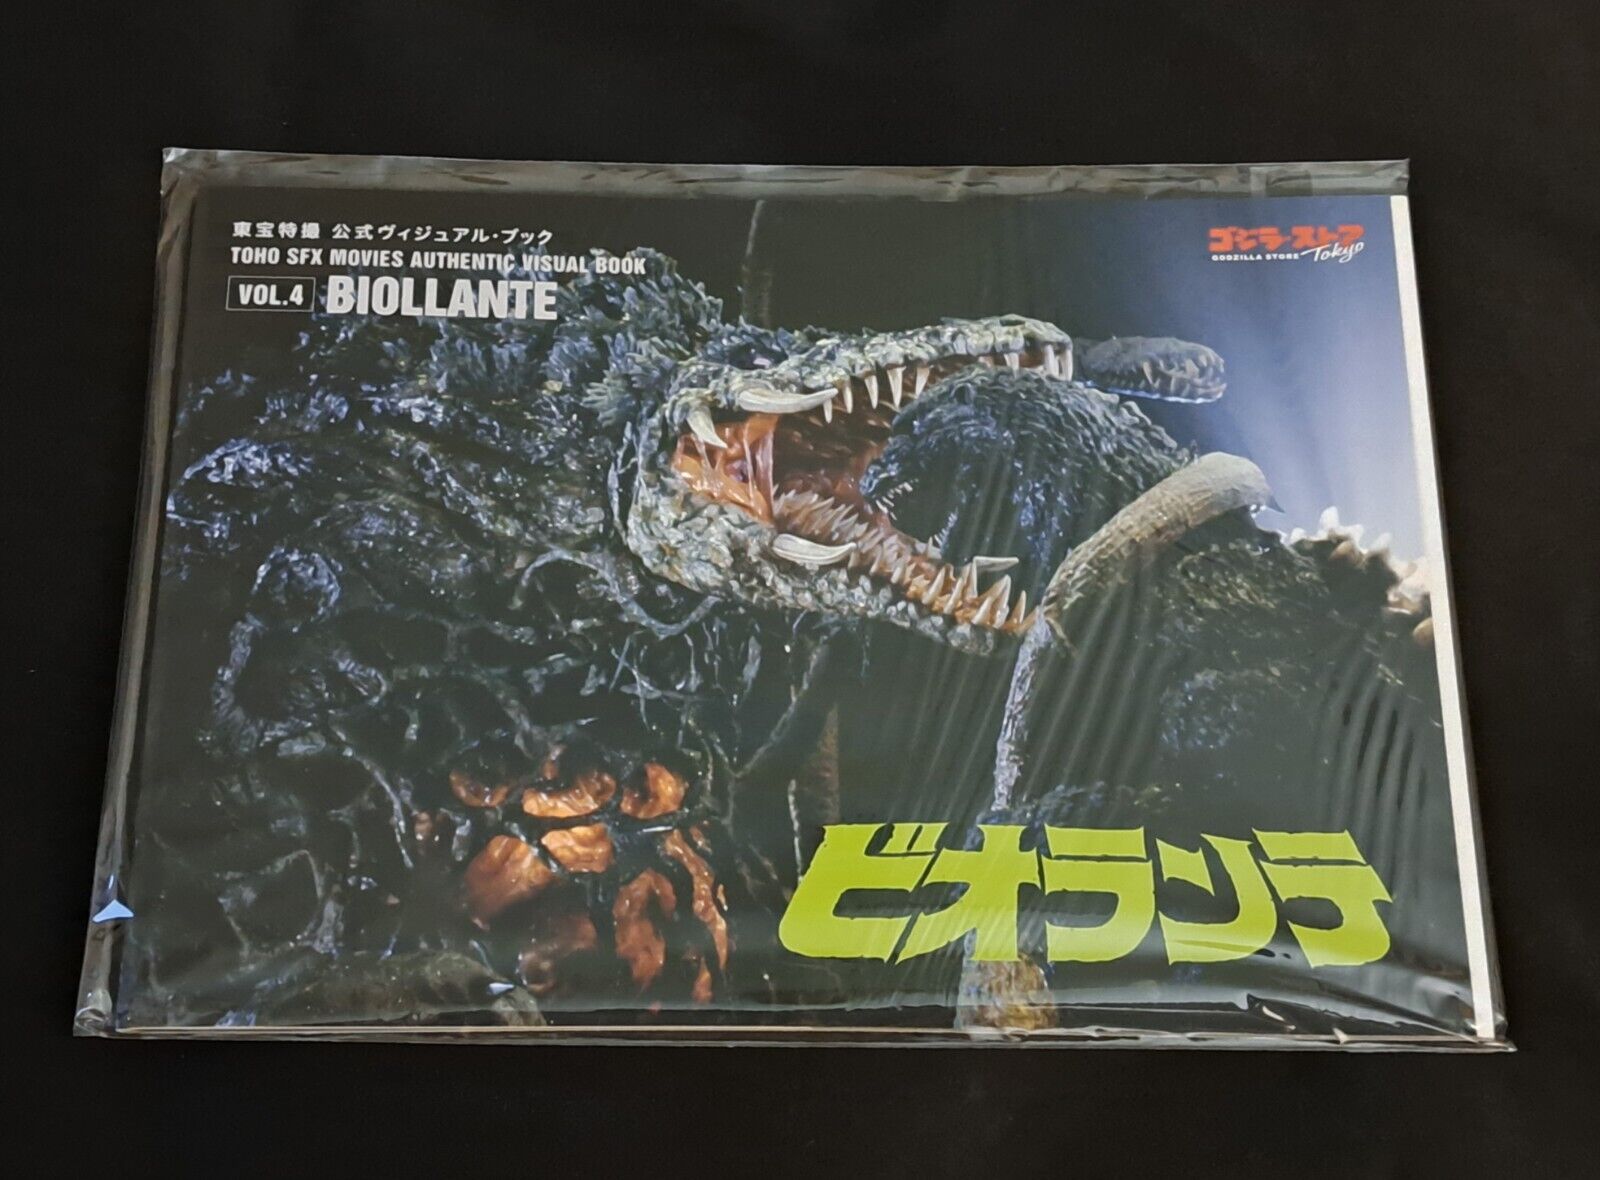 Toho SFX Movies Authentic Visual Book Vol  4 Biollante Godzilla Store Exclusive